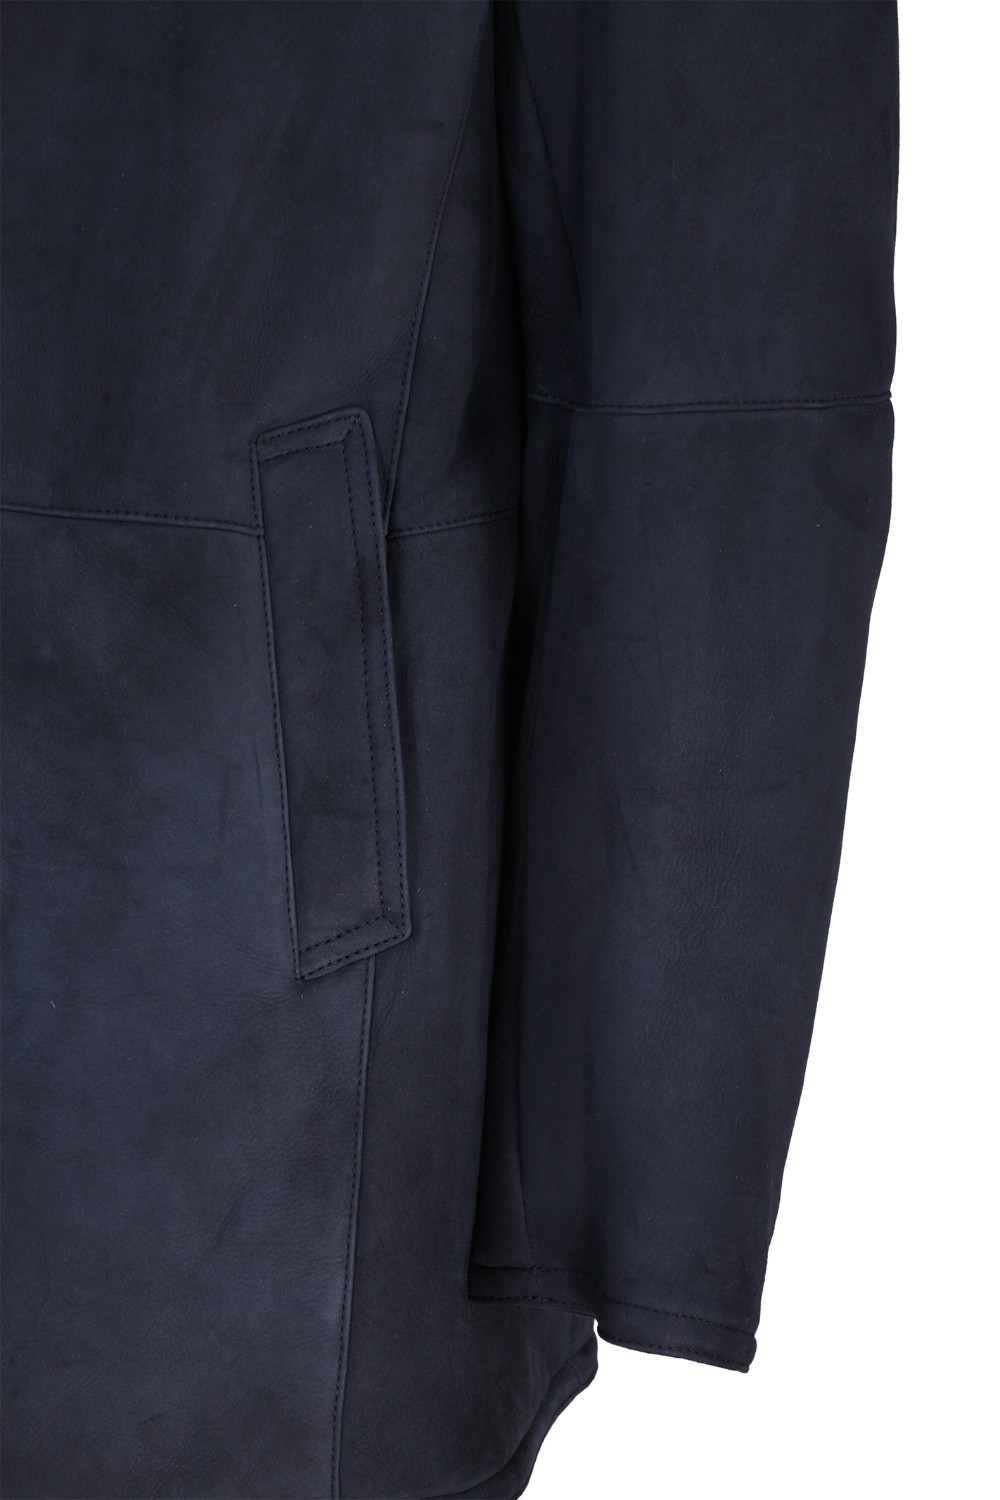 shop GIMO'S Saldi Giaccone: Gimo's giaccone in vero montone, blu.
Tasche laterali.
Chiusura con bottoni.
Composizione: 100% agnello.
Made in Italy.. 20AI 3310-12445 number 3105331